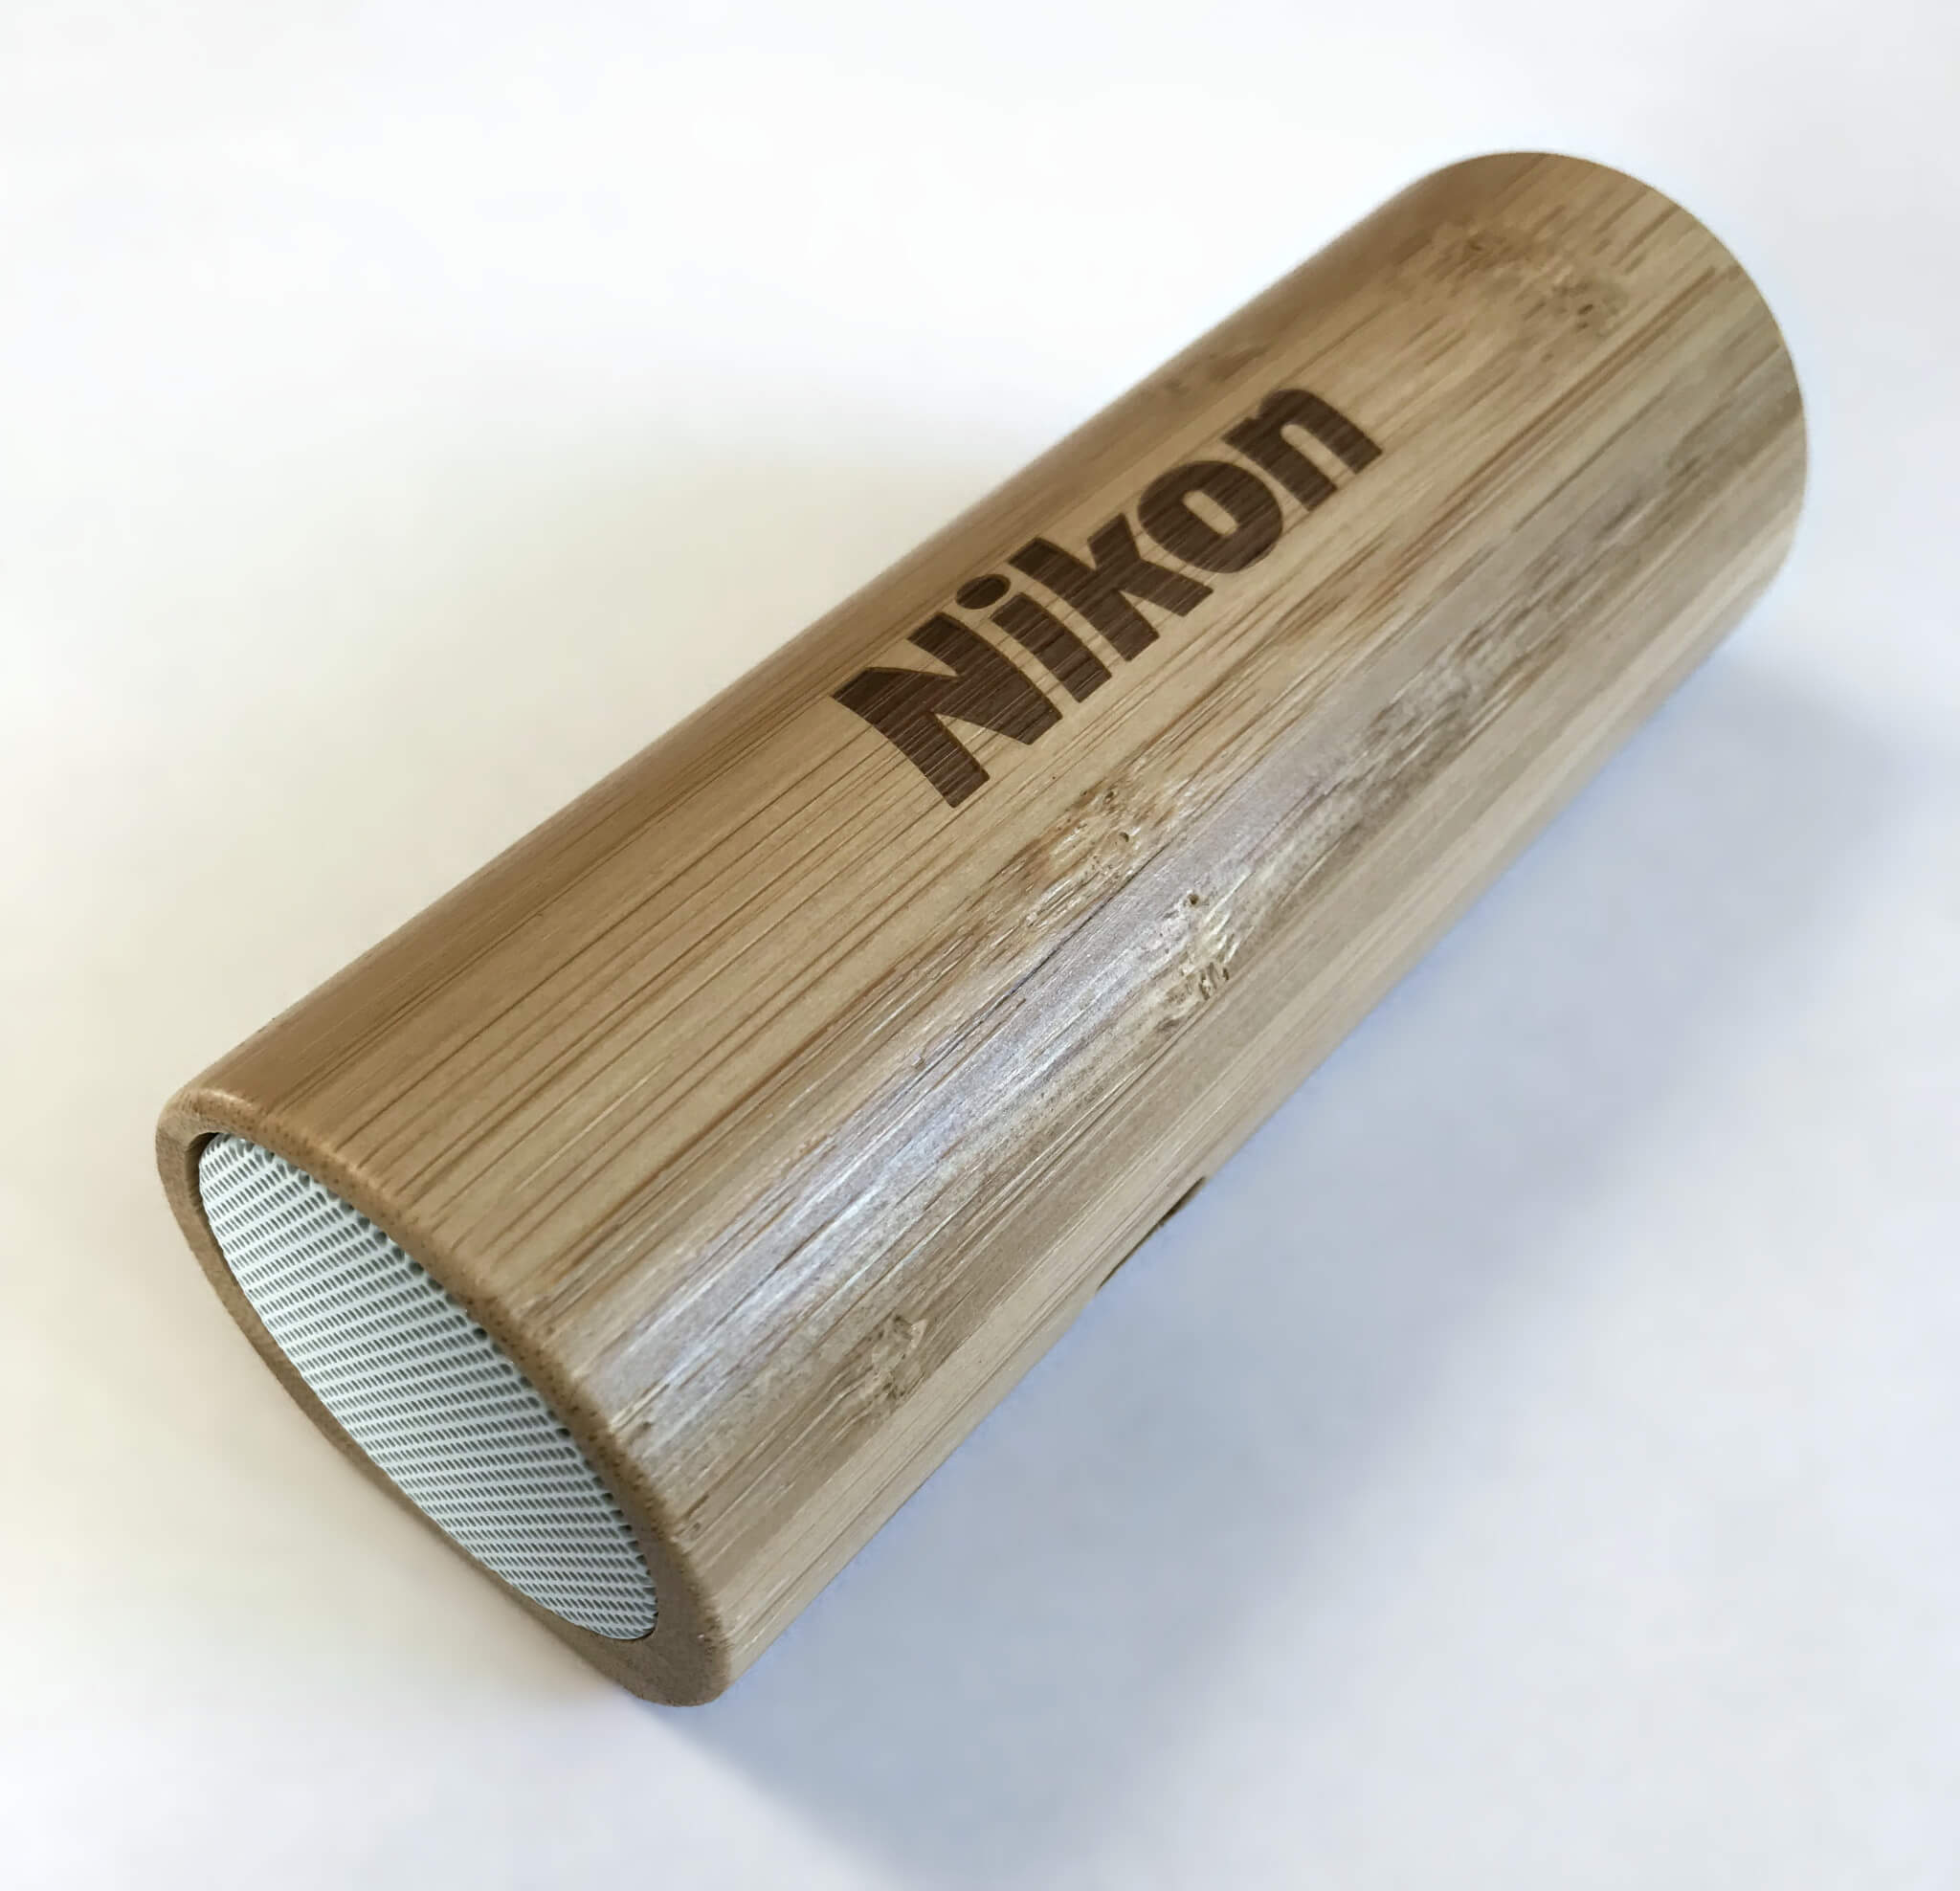 Bambusový bluetooth reproduktor Nikon – cena pro autory tří nejlepších fotografií 3. kola Fotky Nikonblogu